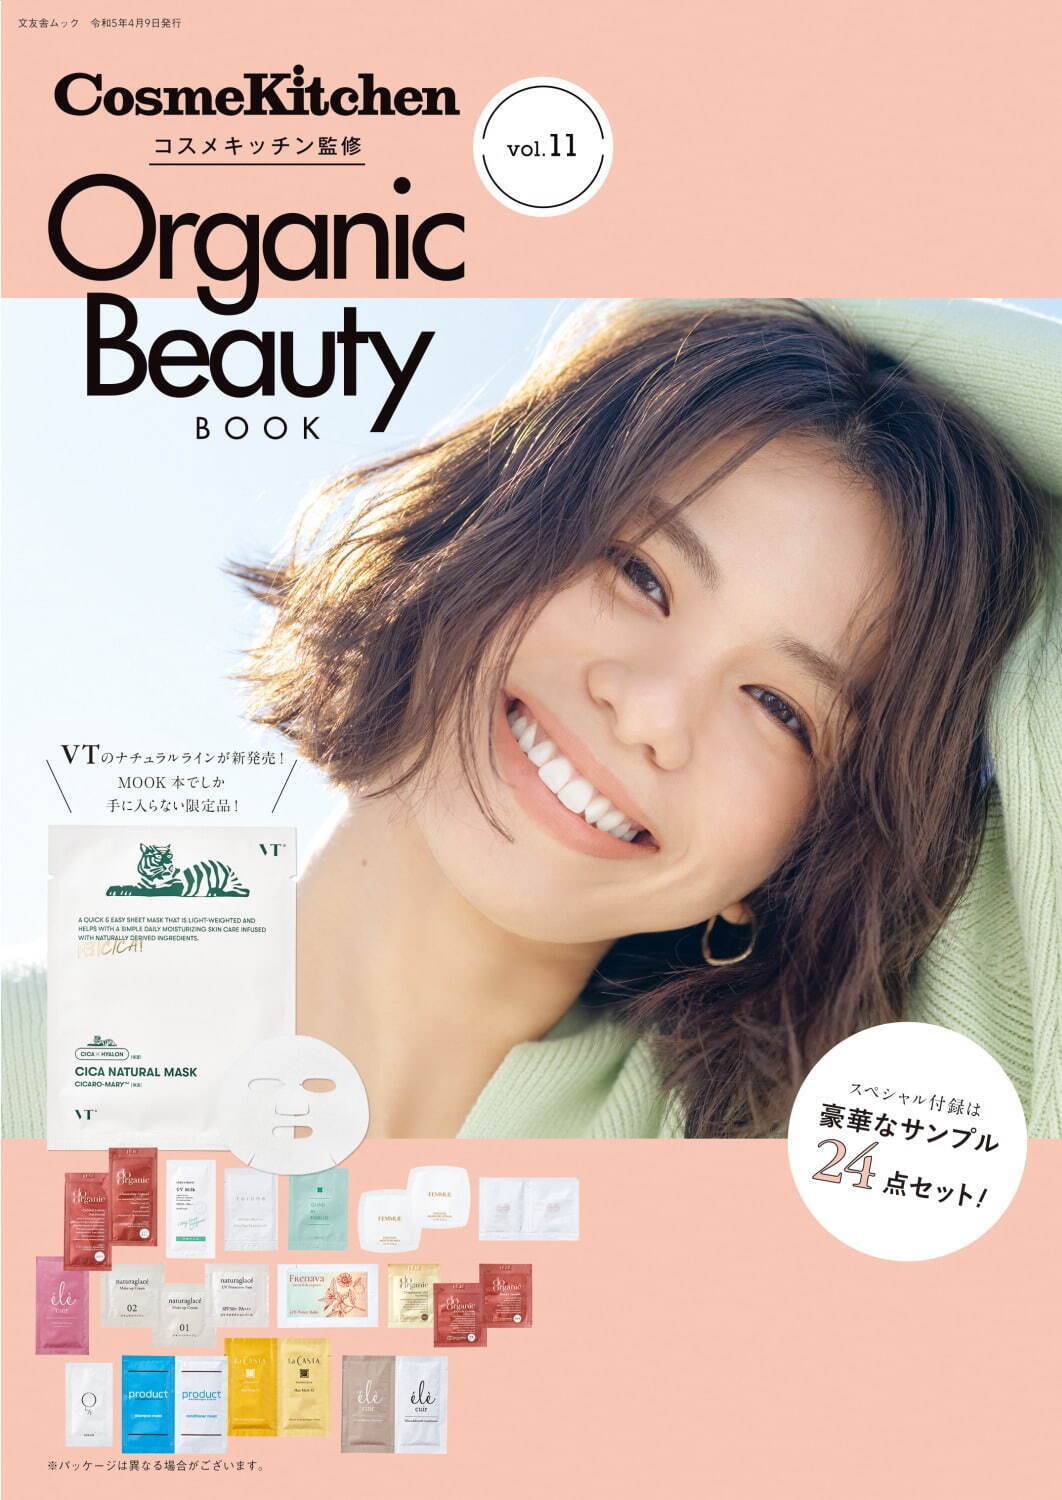 『オーガニックビューティブック(Organic Beauty BOOK) vol.11』 1,100円